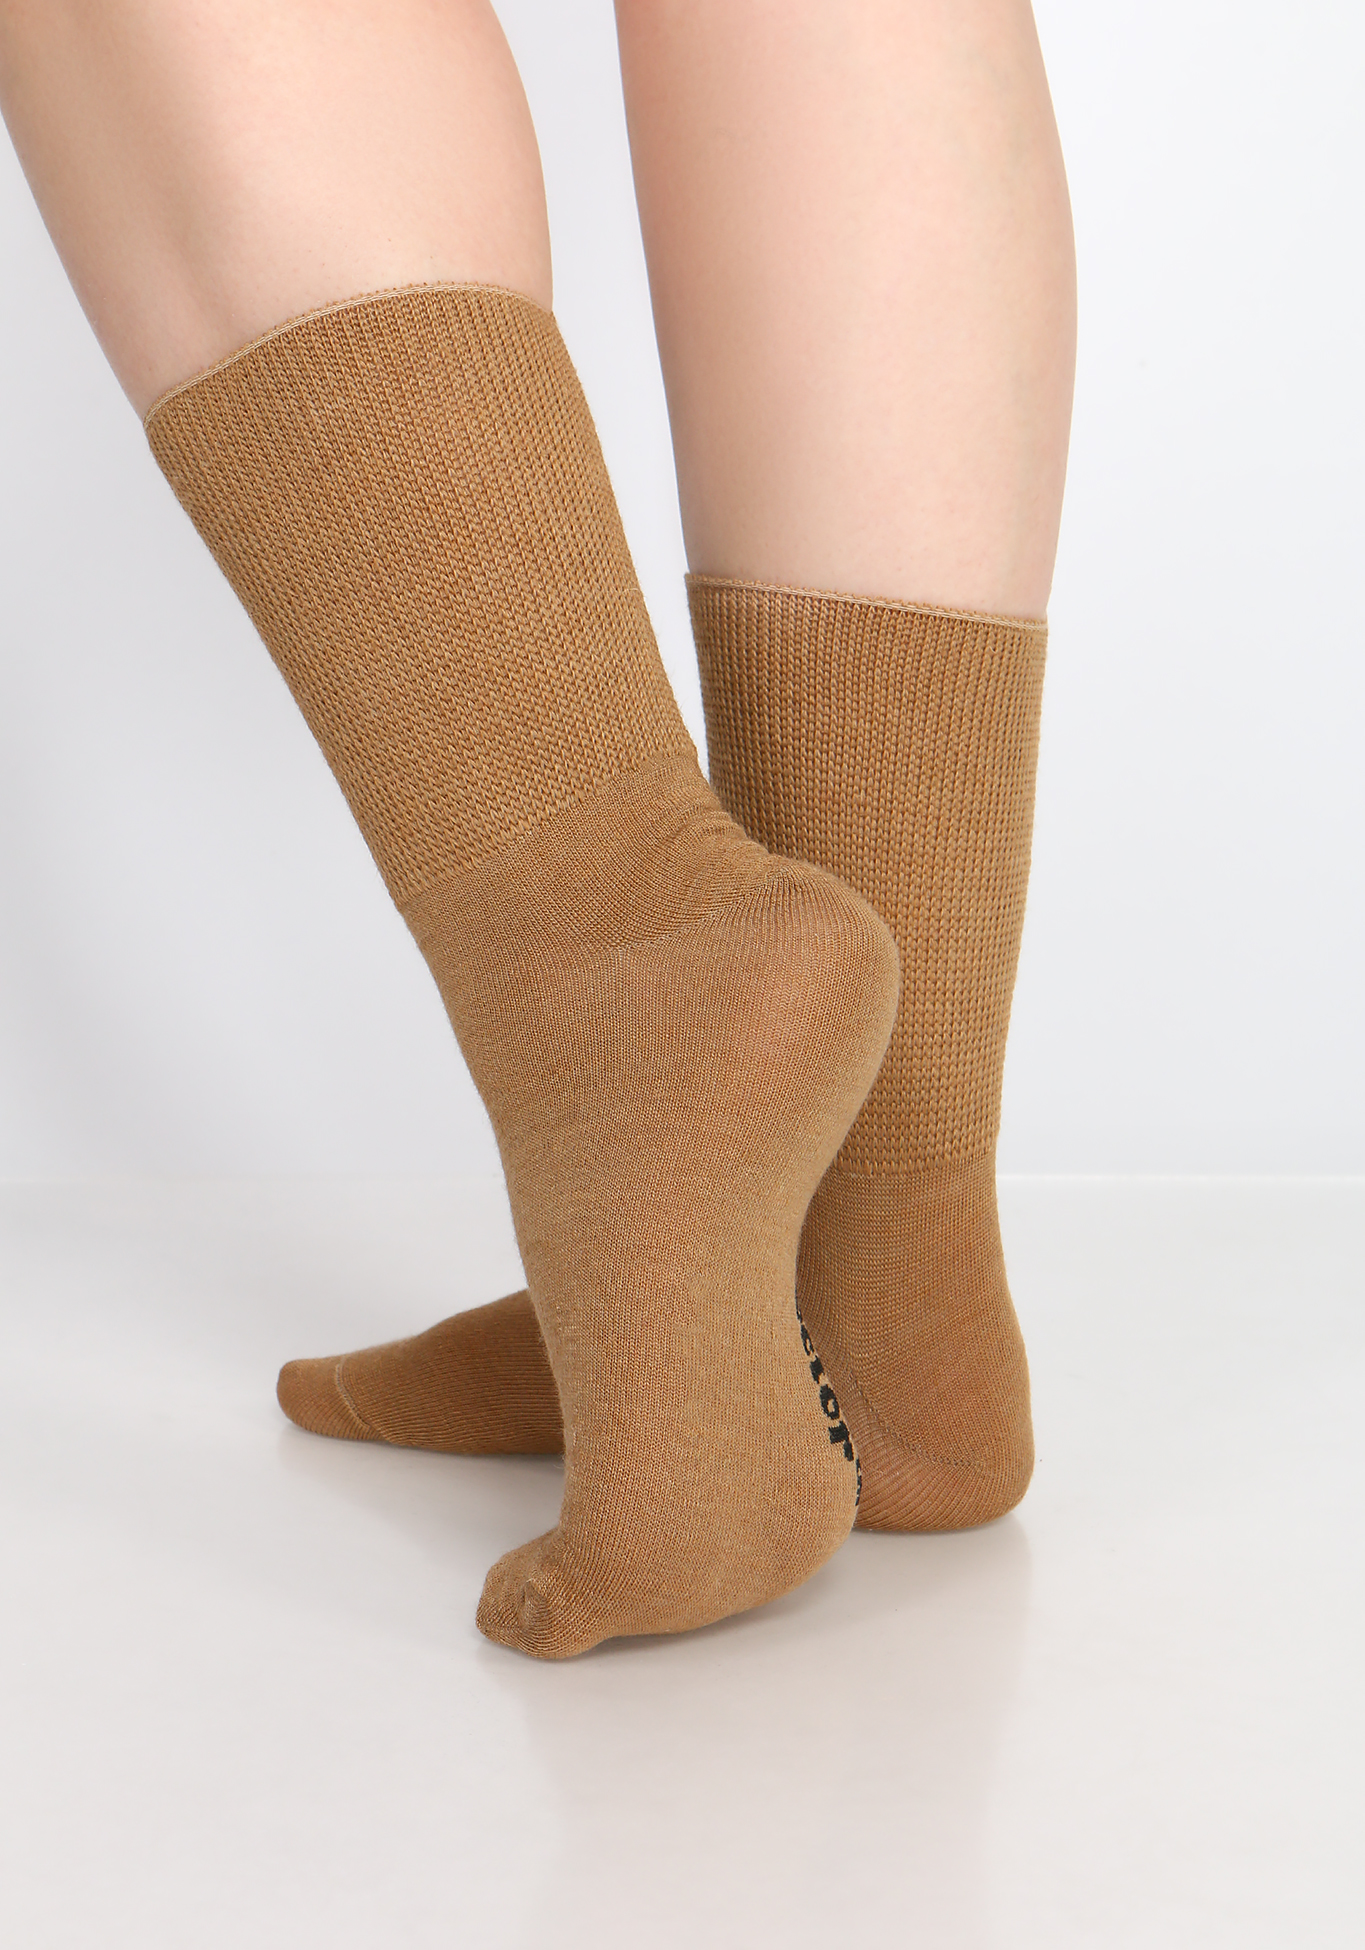 Носки на полную ногу из верблюжьей шерсти, 2 пары Центр Доктор, размер 44-45 - фото 2